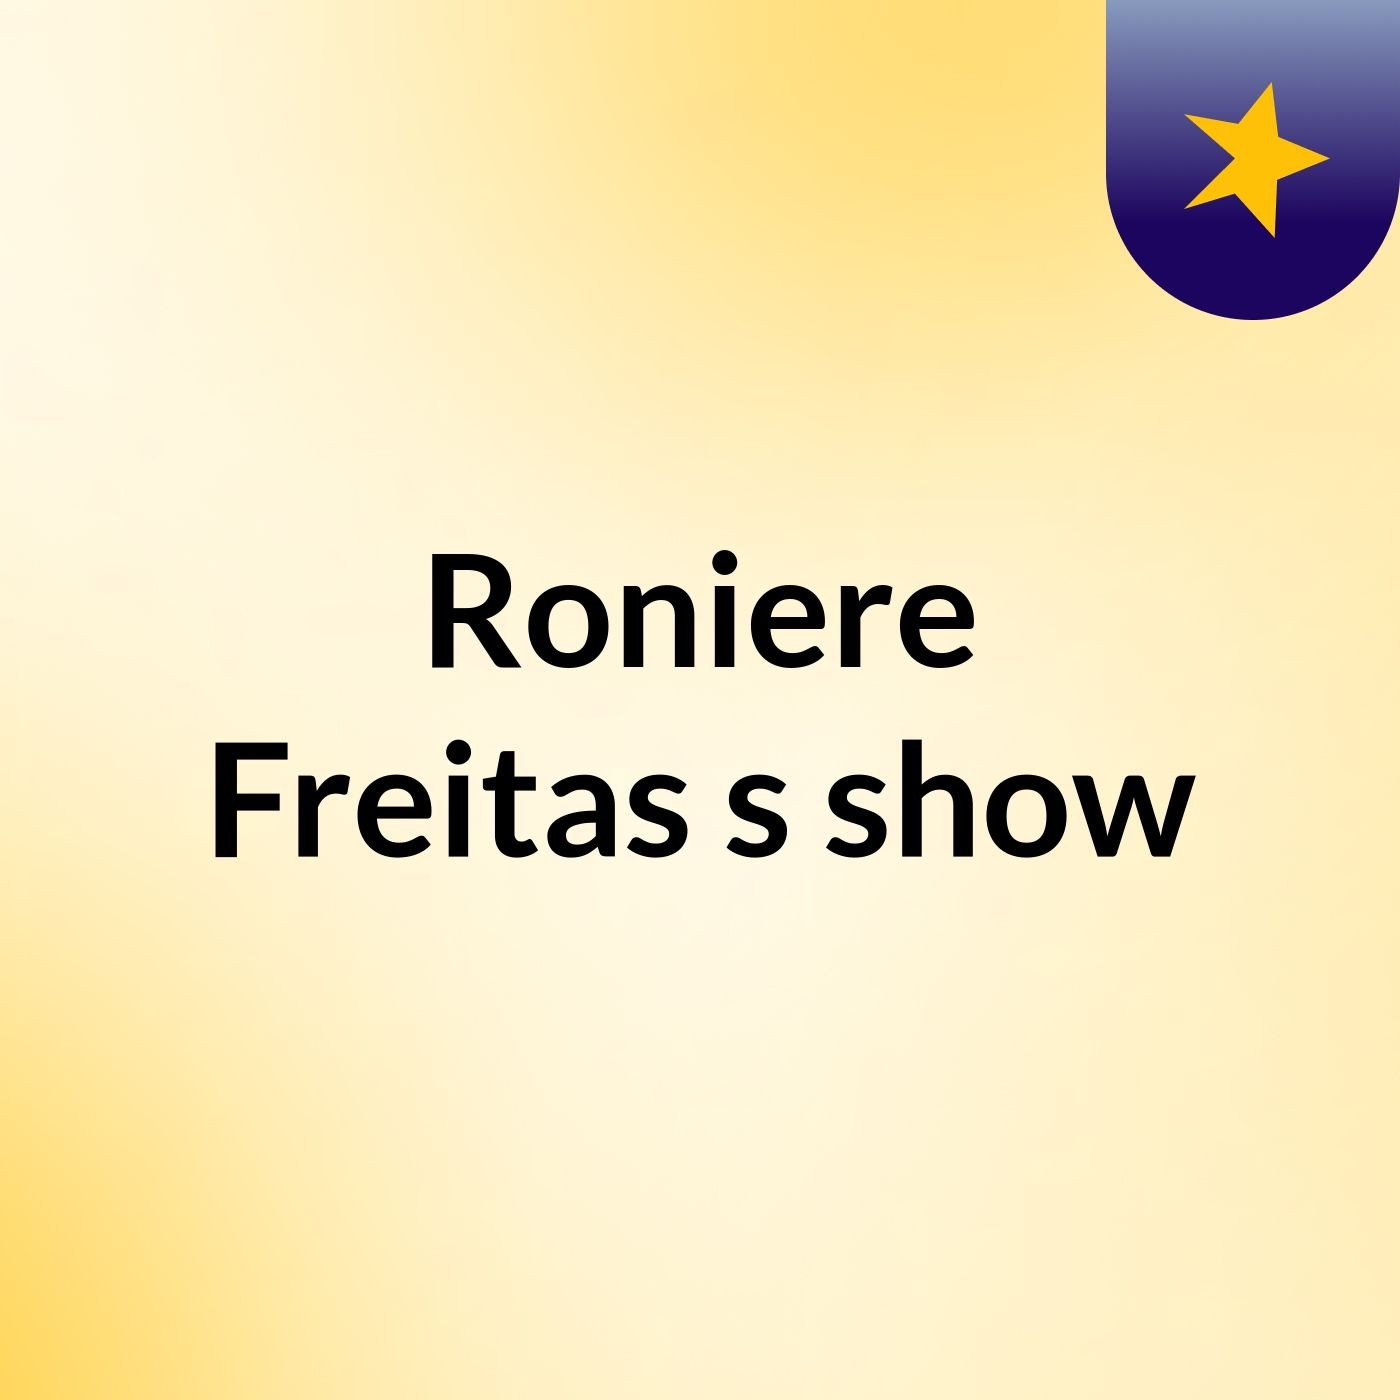 Roniere Freitas's show